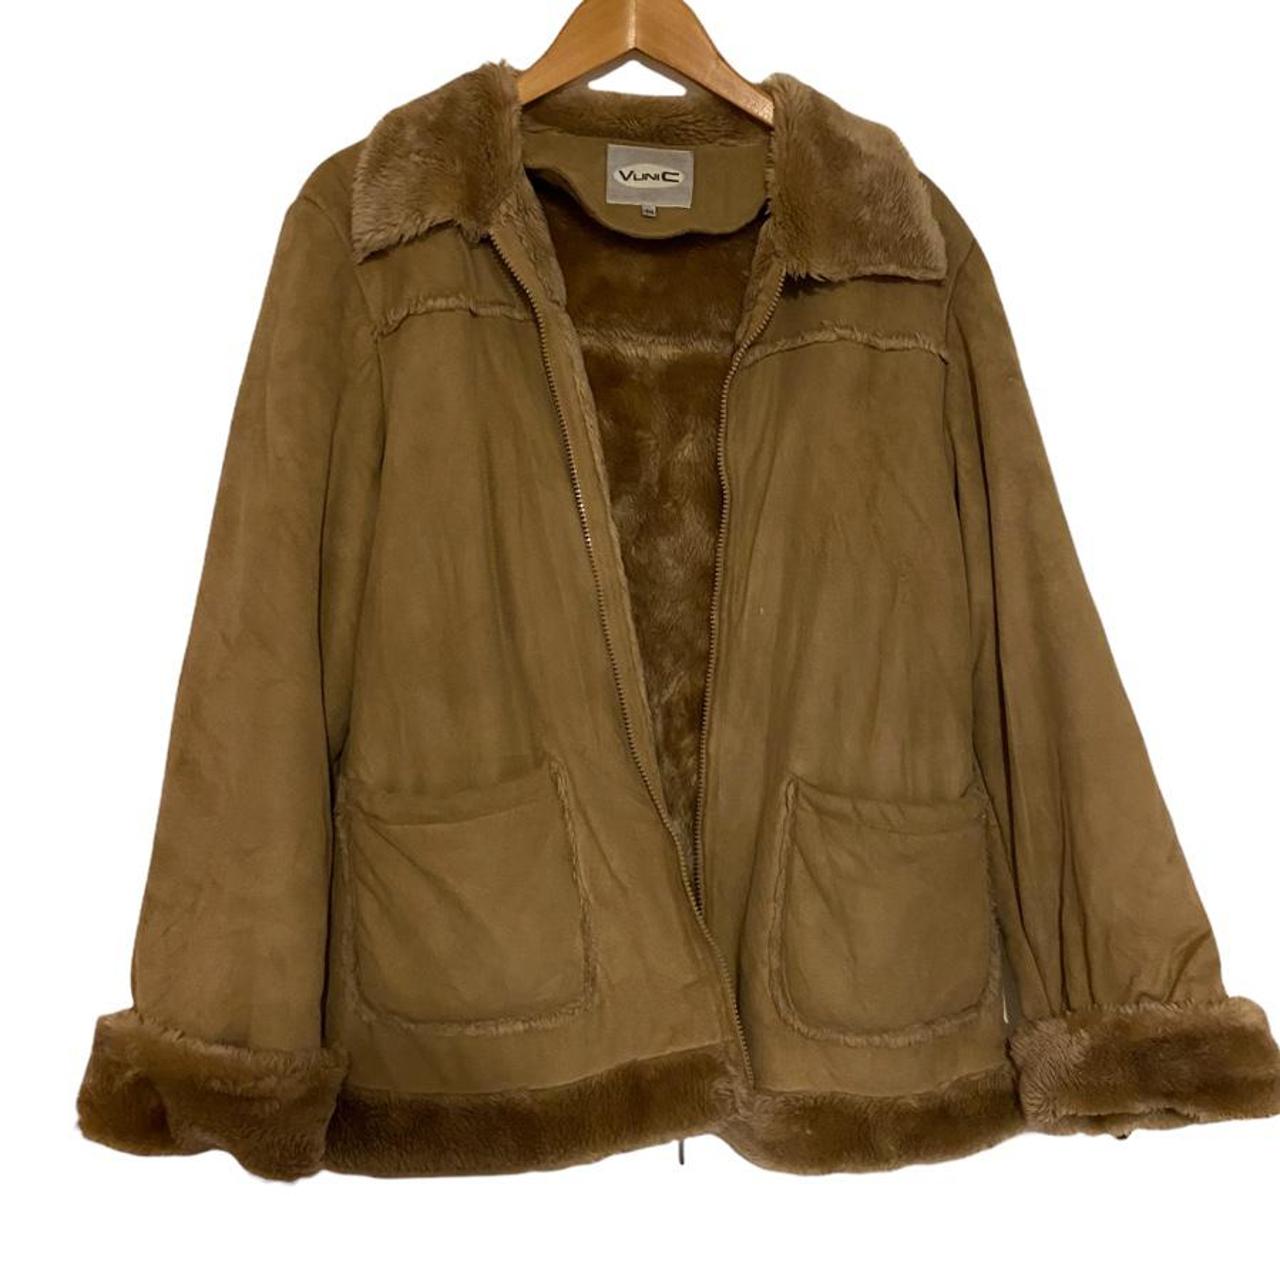 Vintage fur coat #fur #coat #y2k - Depop